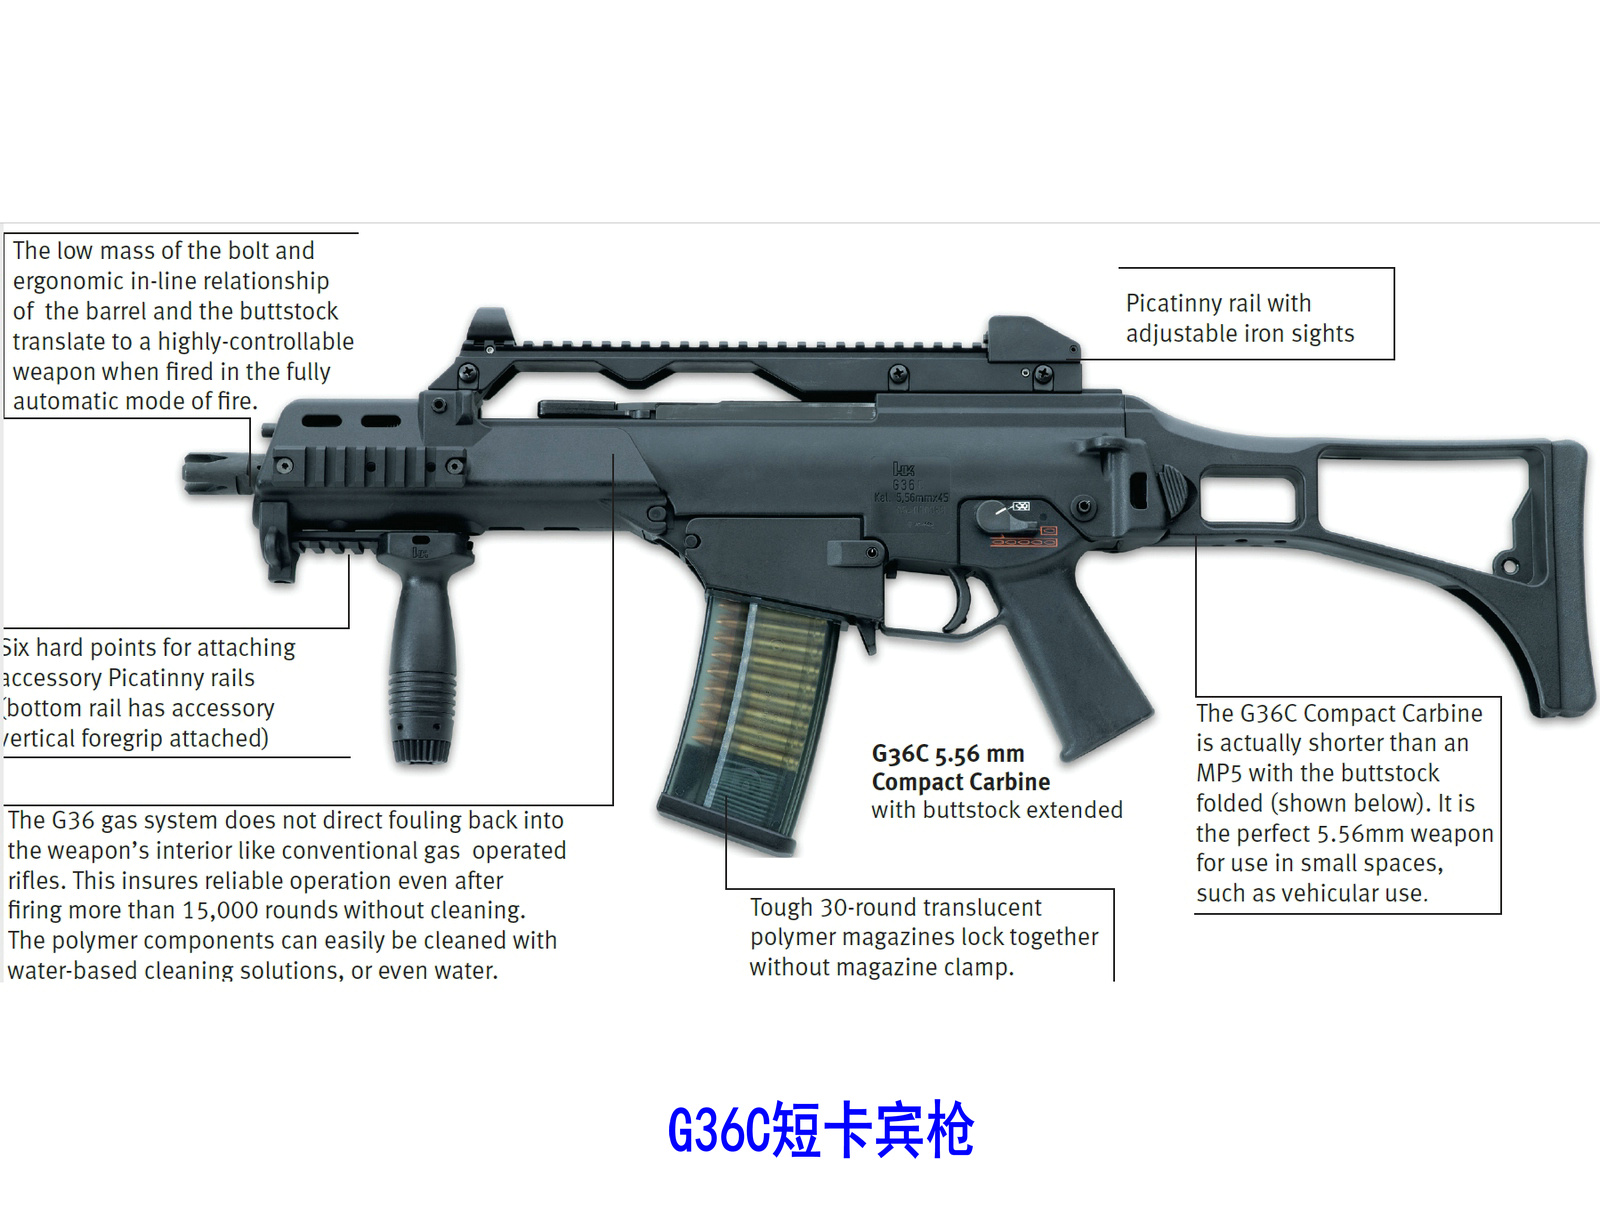 G36C短卡賓槍